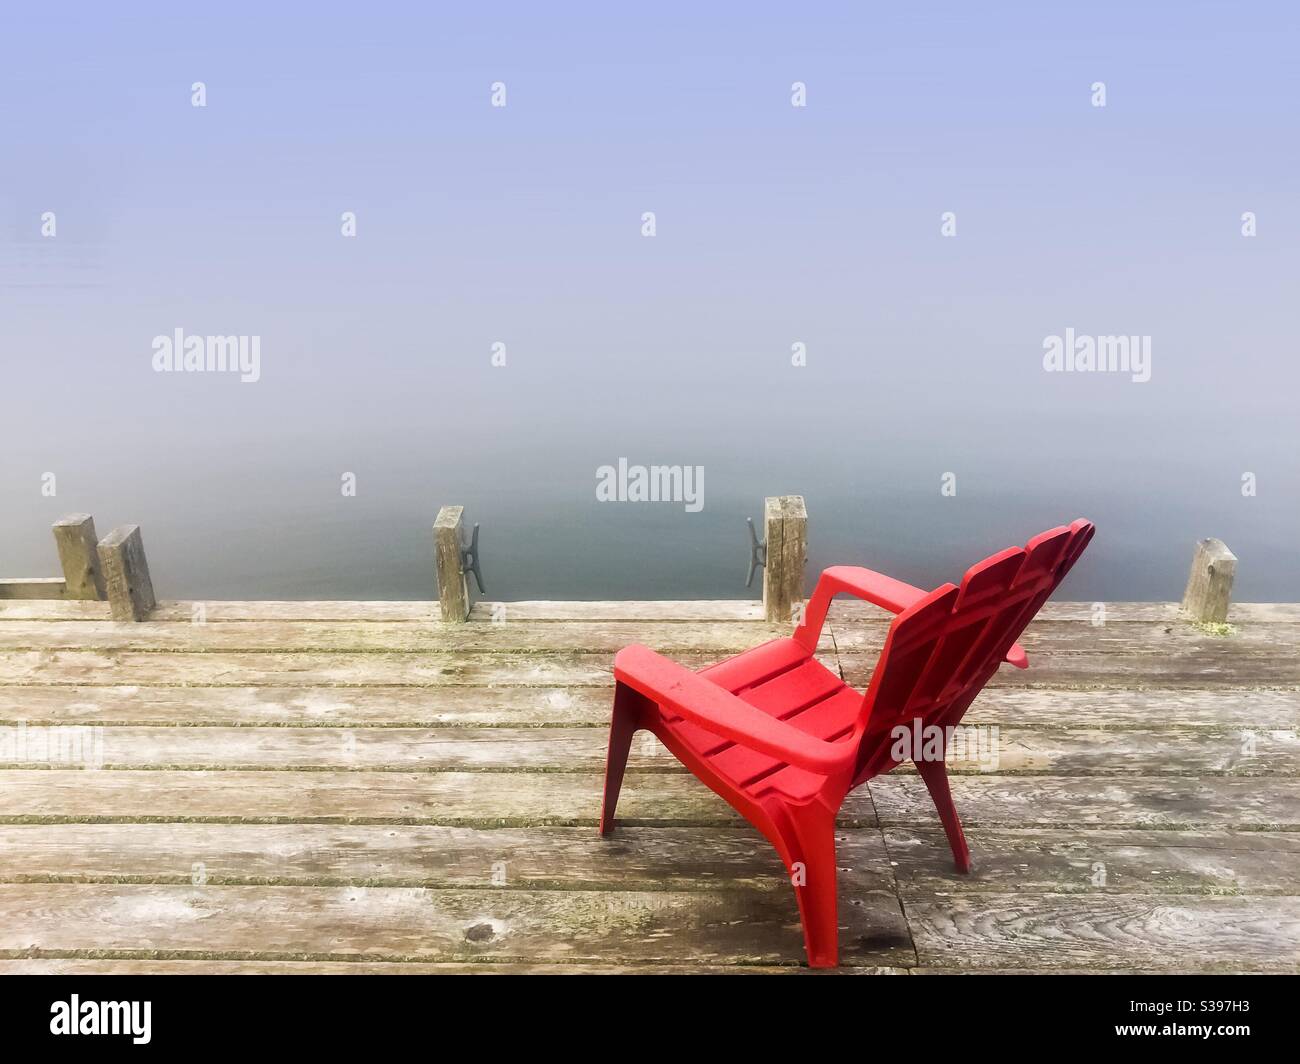 Ein Stuhl auf einem Dock im Nebel mit Blick auf das Wasser, Nova Scotia, Kanada. Zimmer für Typ. Konzeptuelles Bild, das Einsamkeit, Kraft eines Menschen, heiße Sitzfläche, herannahender Nebel zeigt. Stockfoto